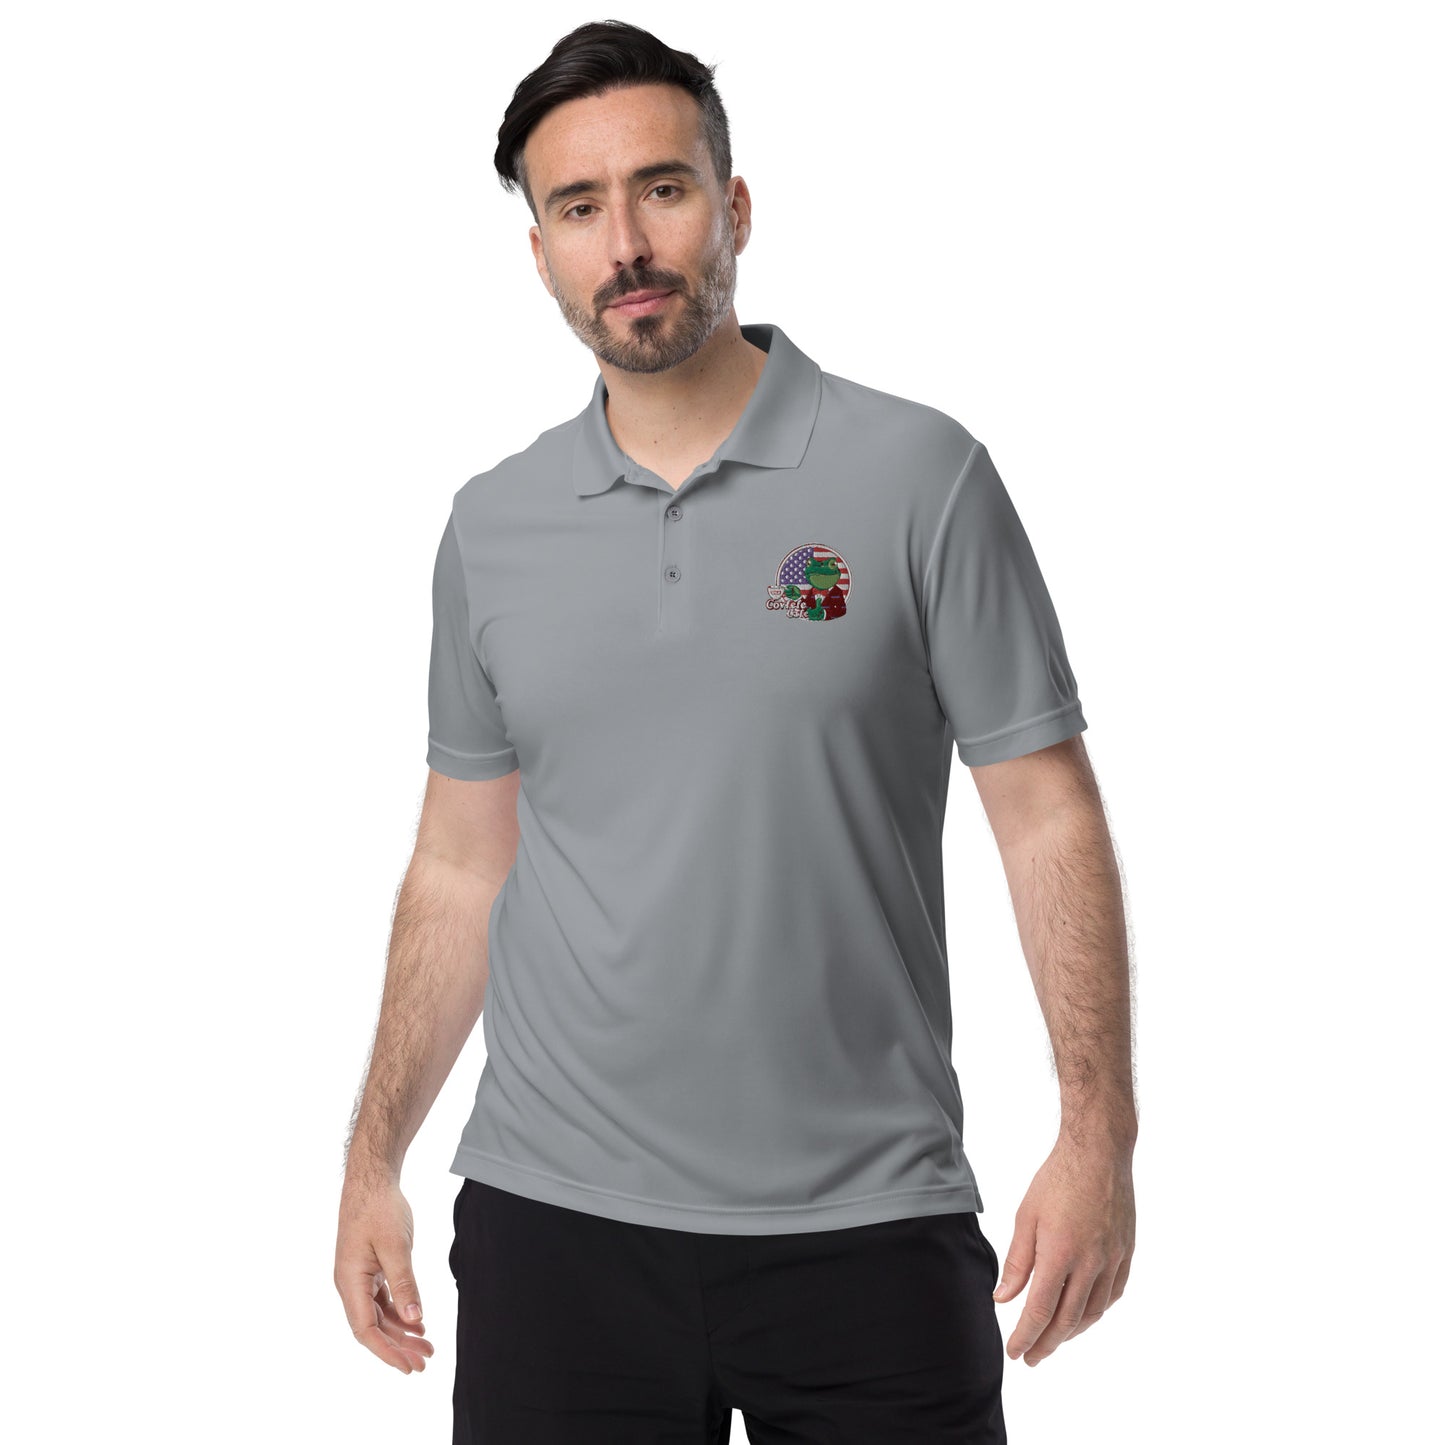 Covfefe Adidas Performance Polo Shirt